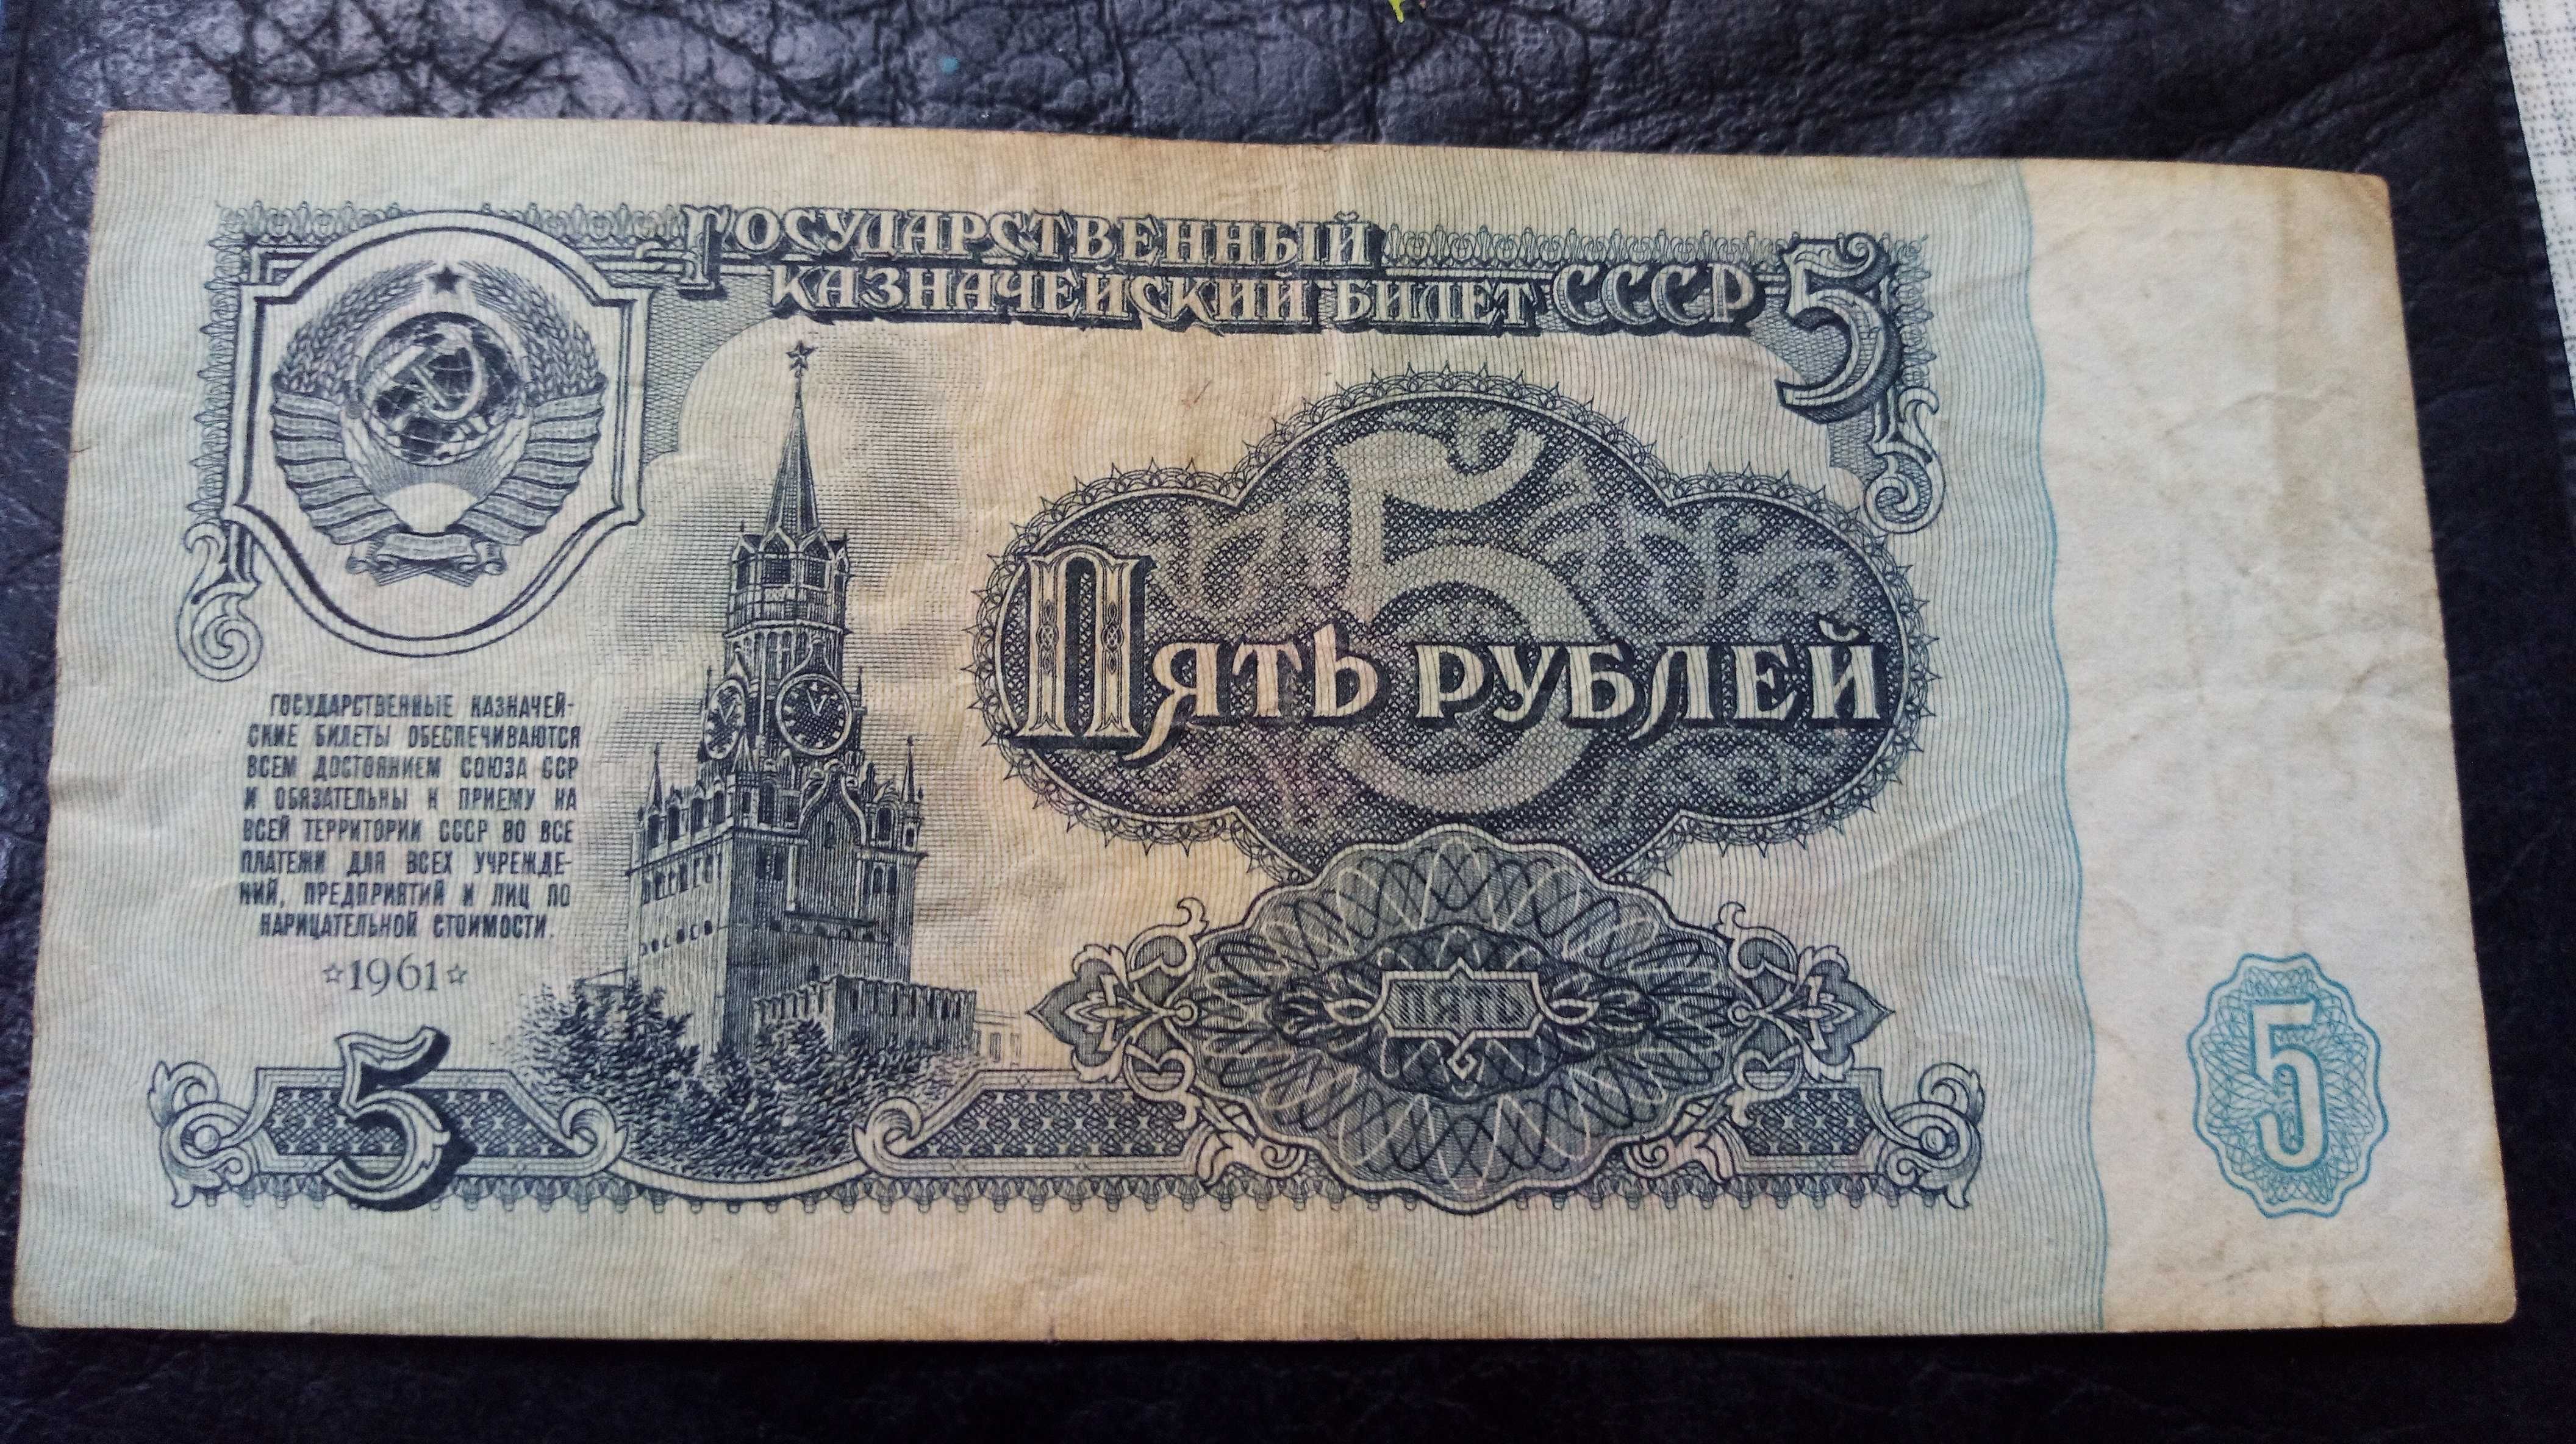 3,5,10 рубли 1961 года в хорошем состоянии